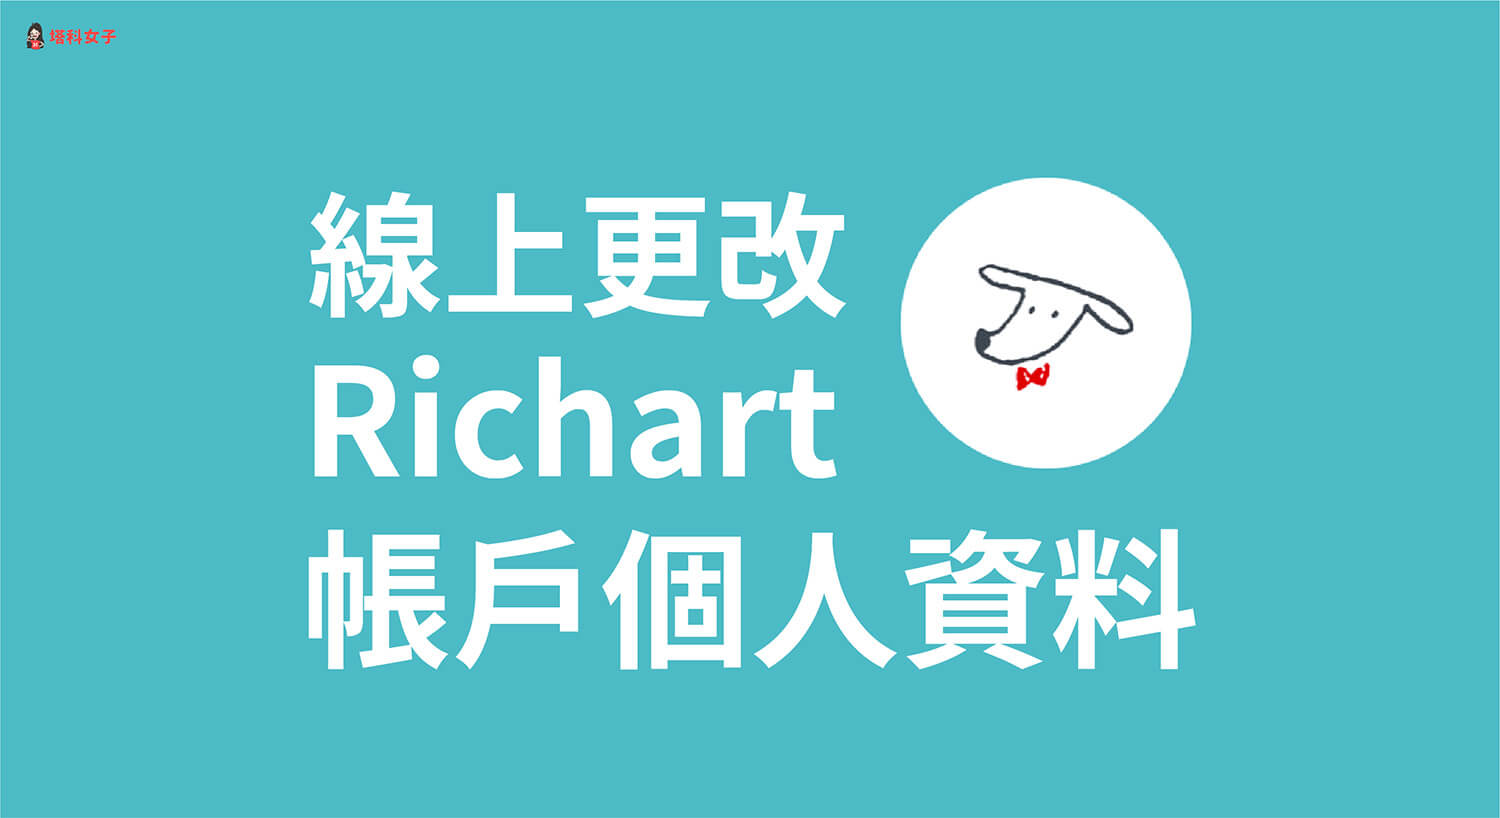 Richart 如何更改地址或手機號碼等基本資料？線上更改教學